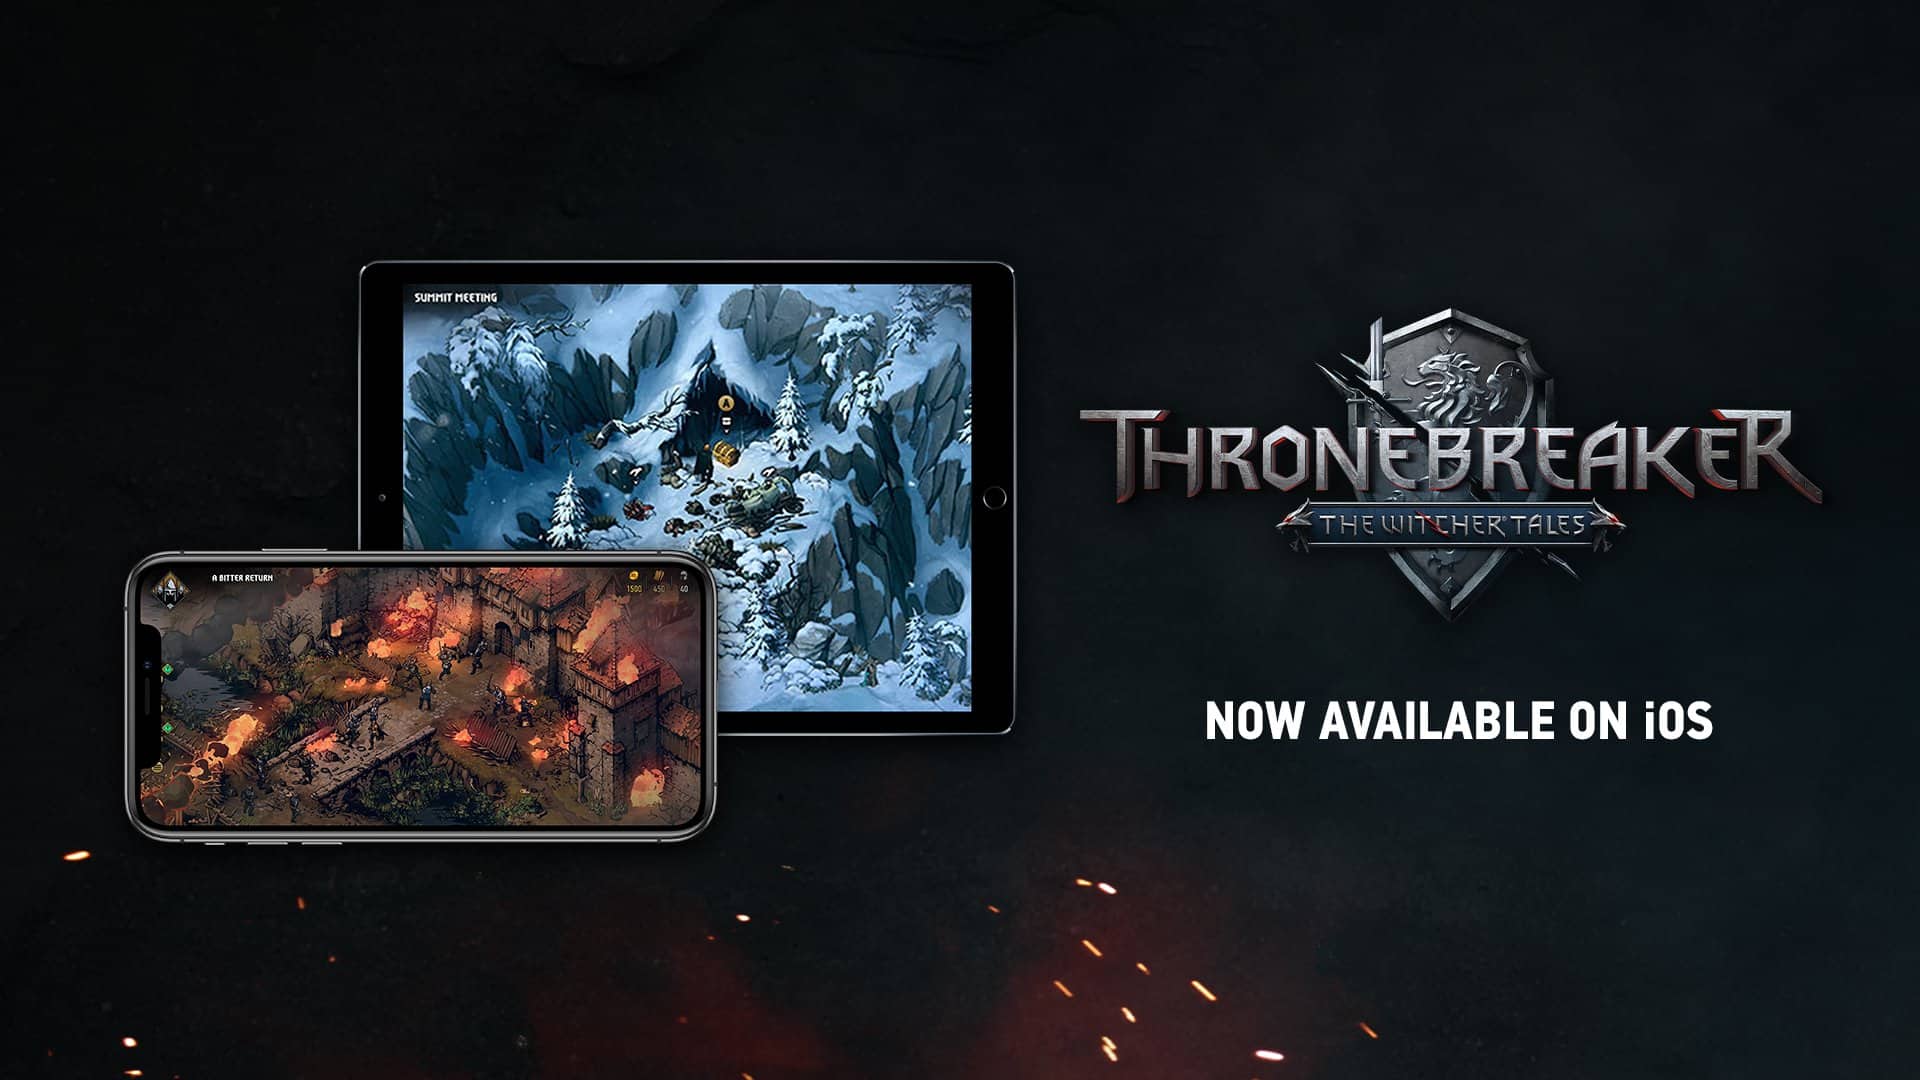 Thronebreaker iOs release